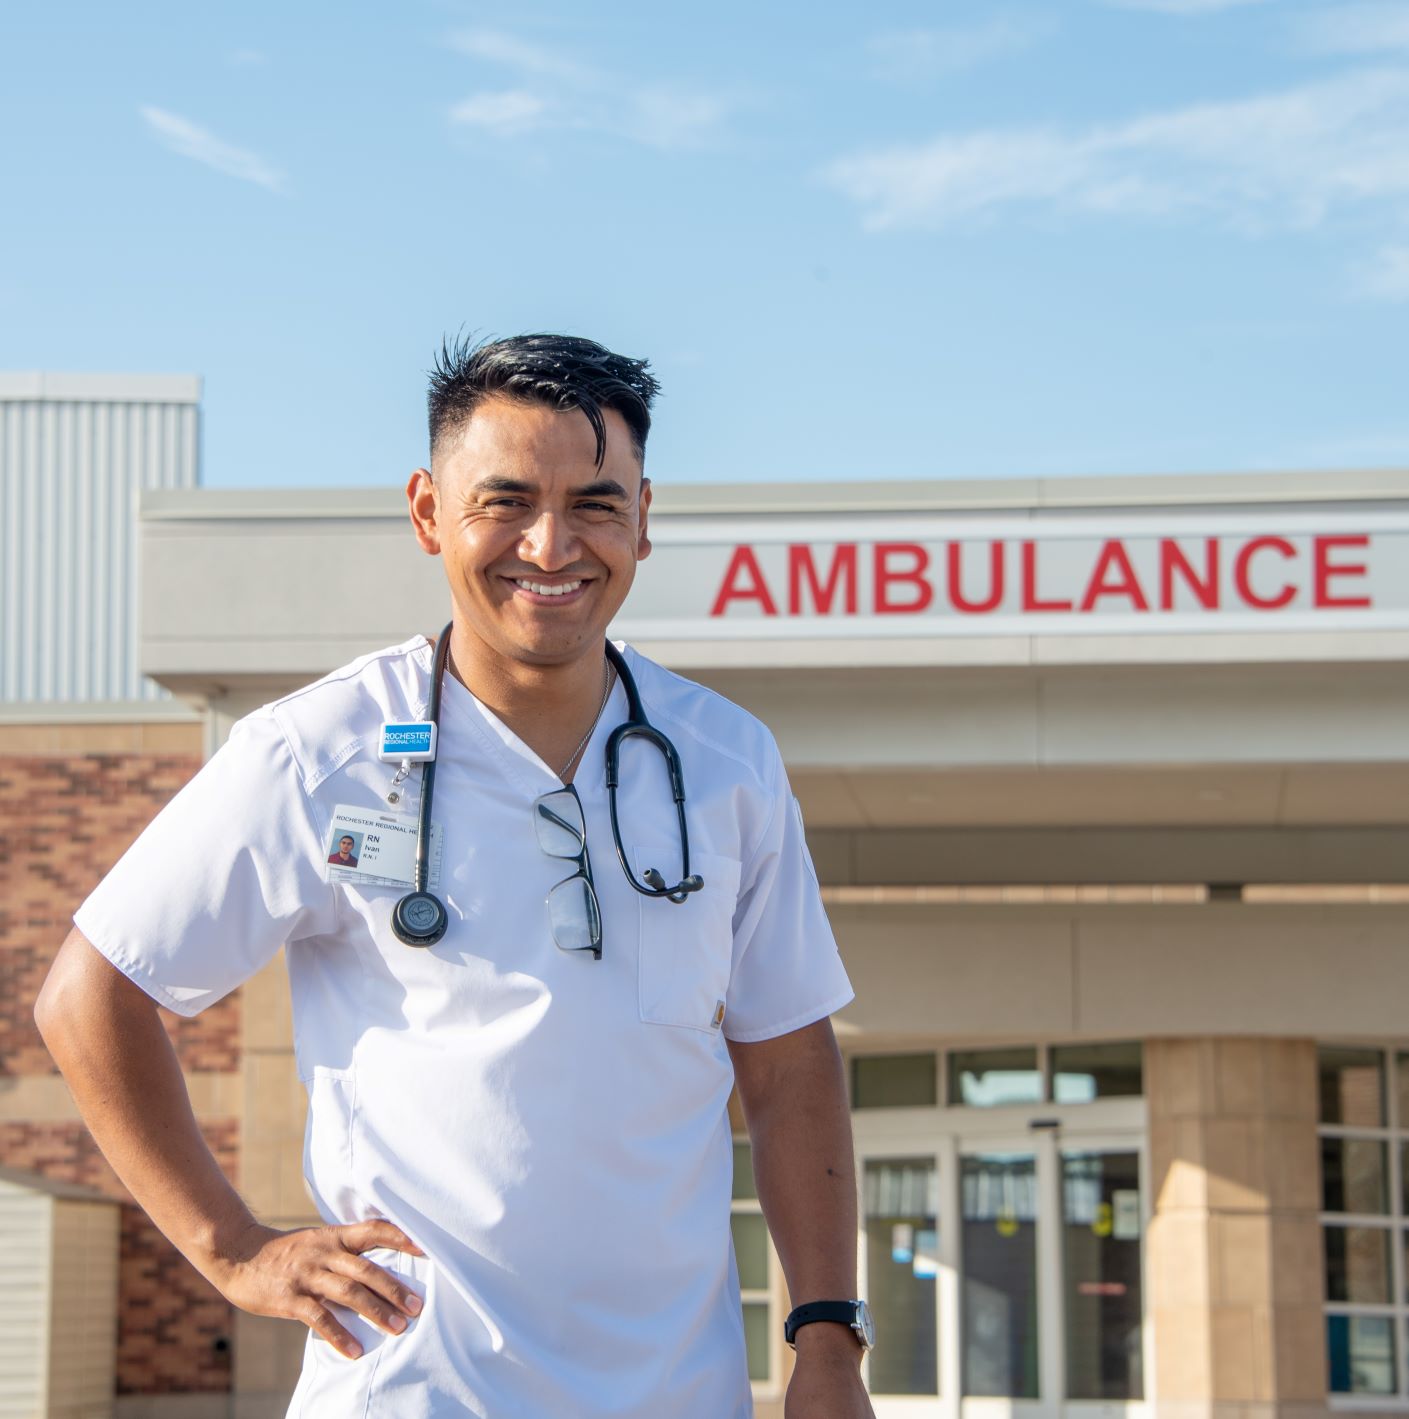 Nurse standing outside hospital emergency entrance